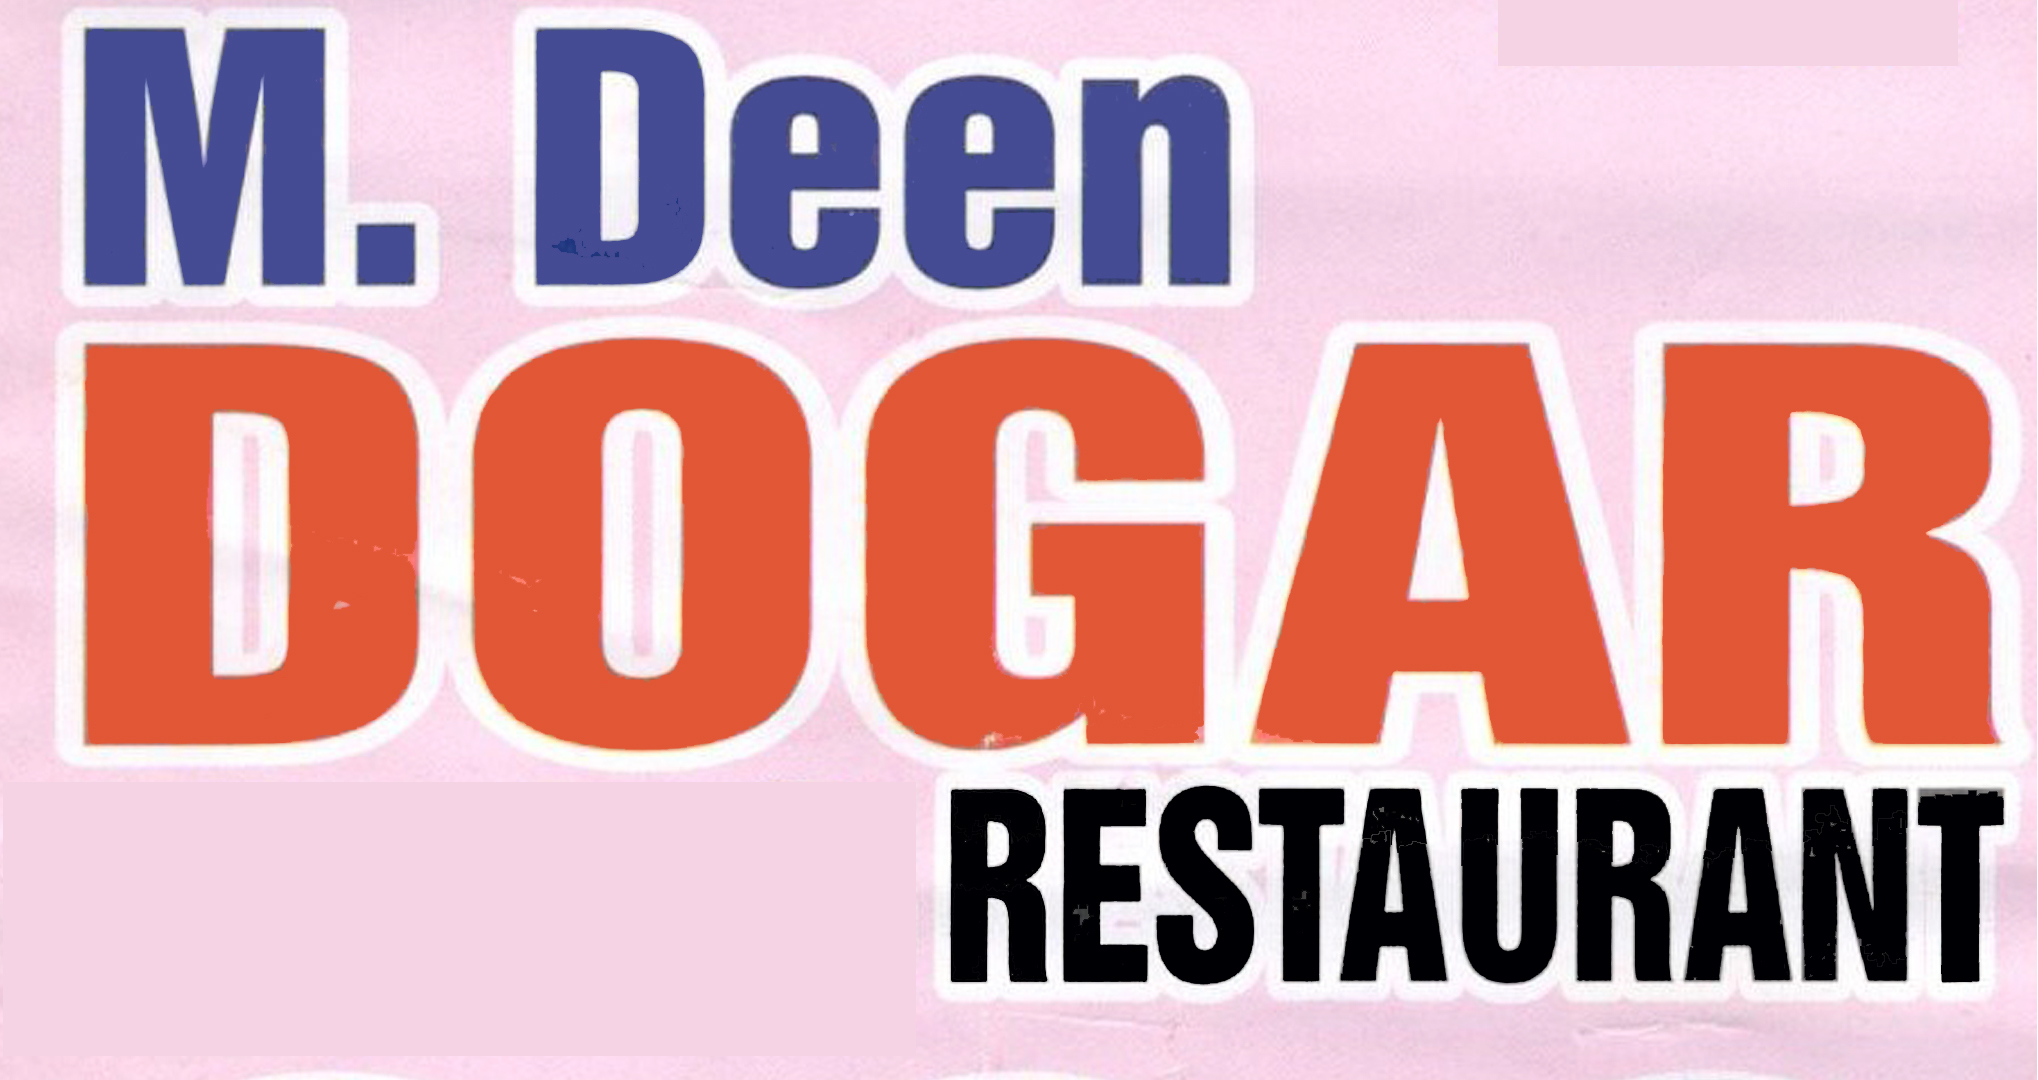 M. Deen Dogar Restaurant